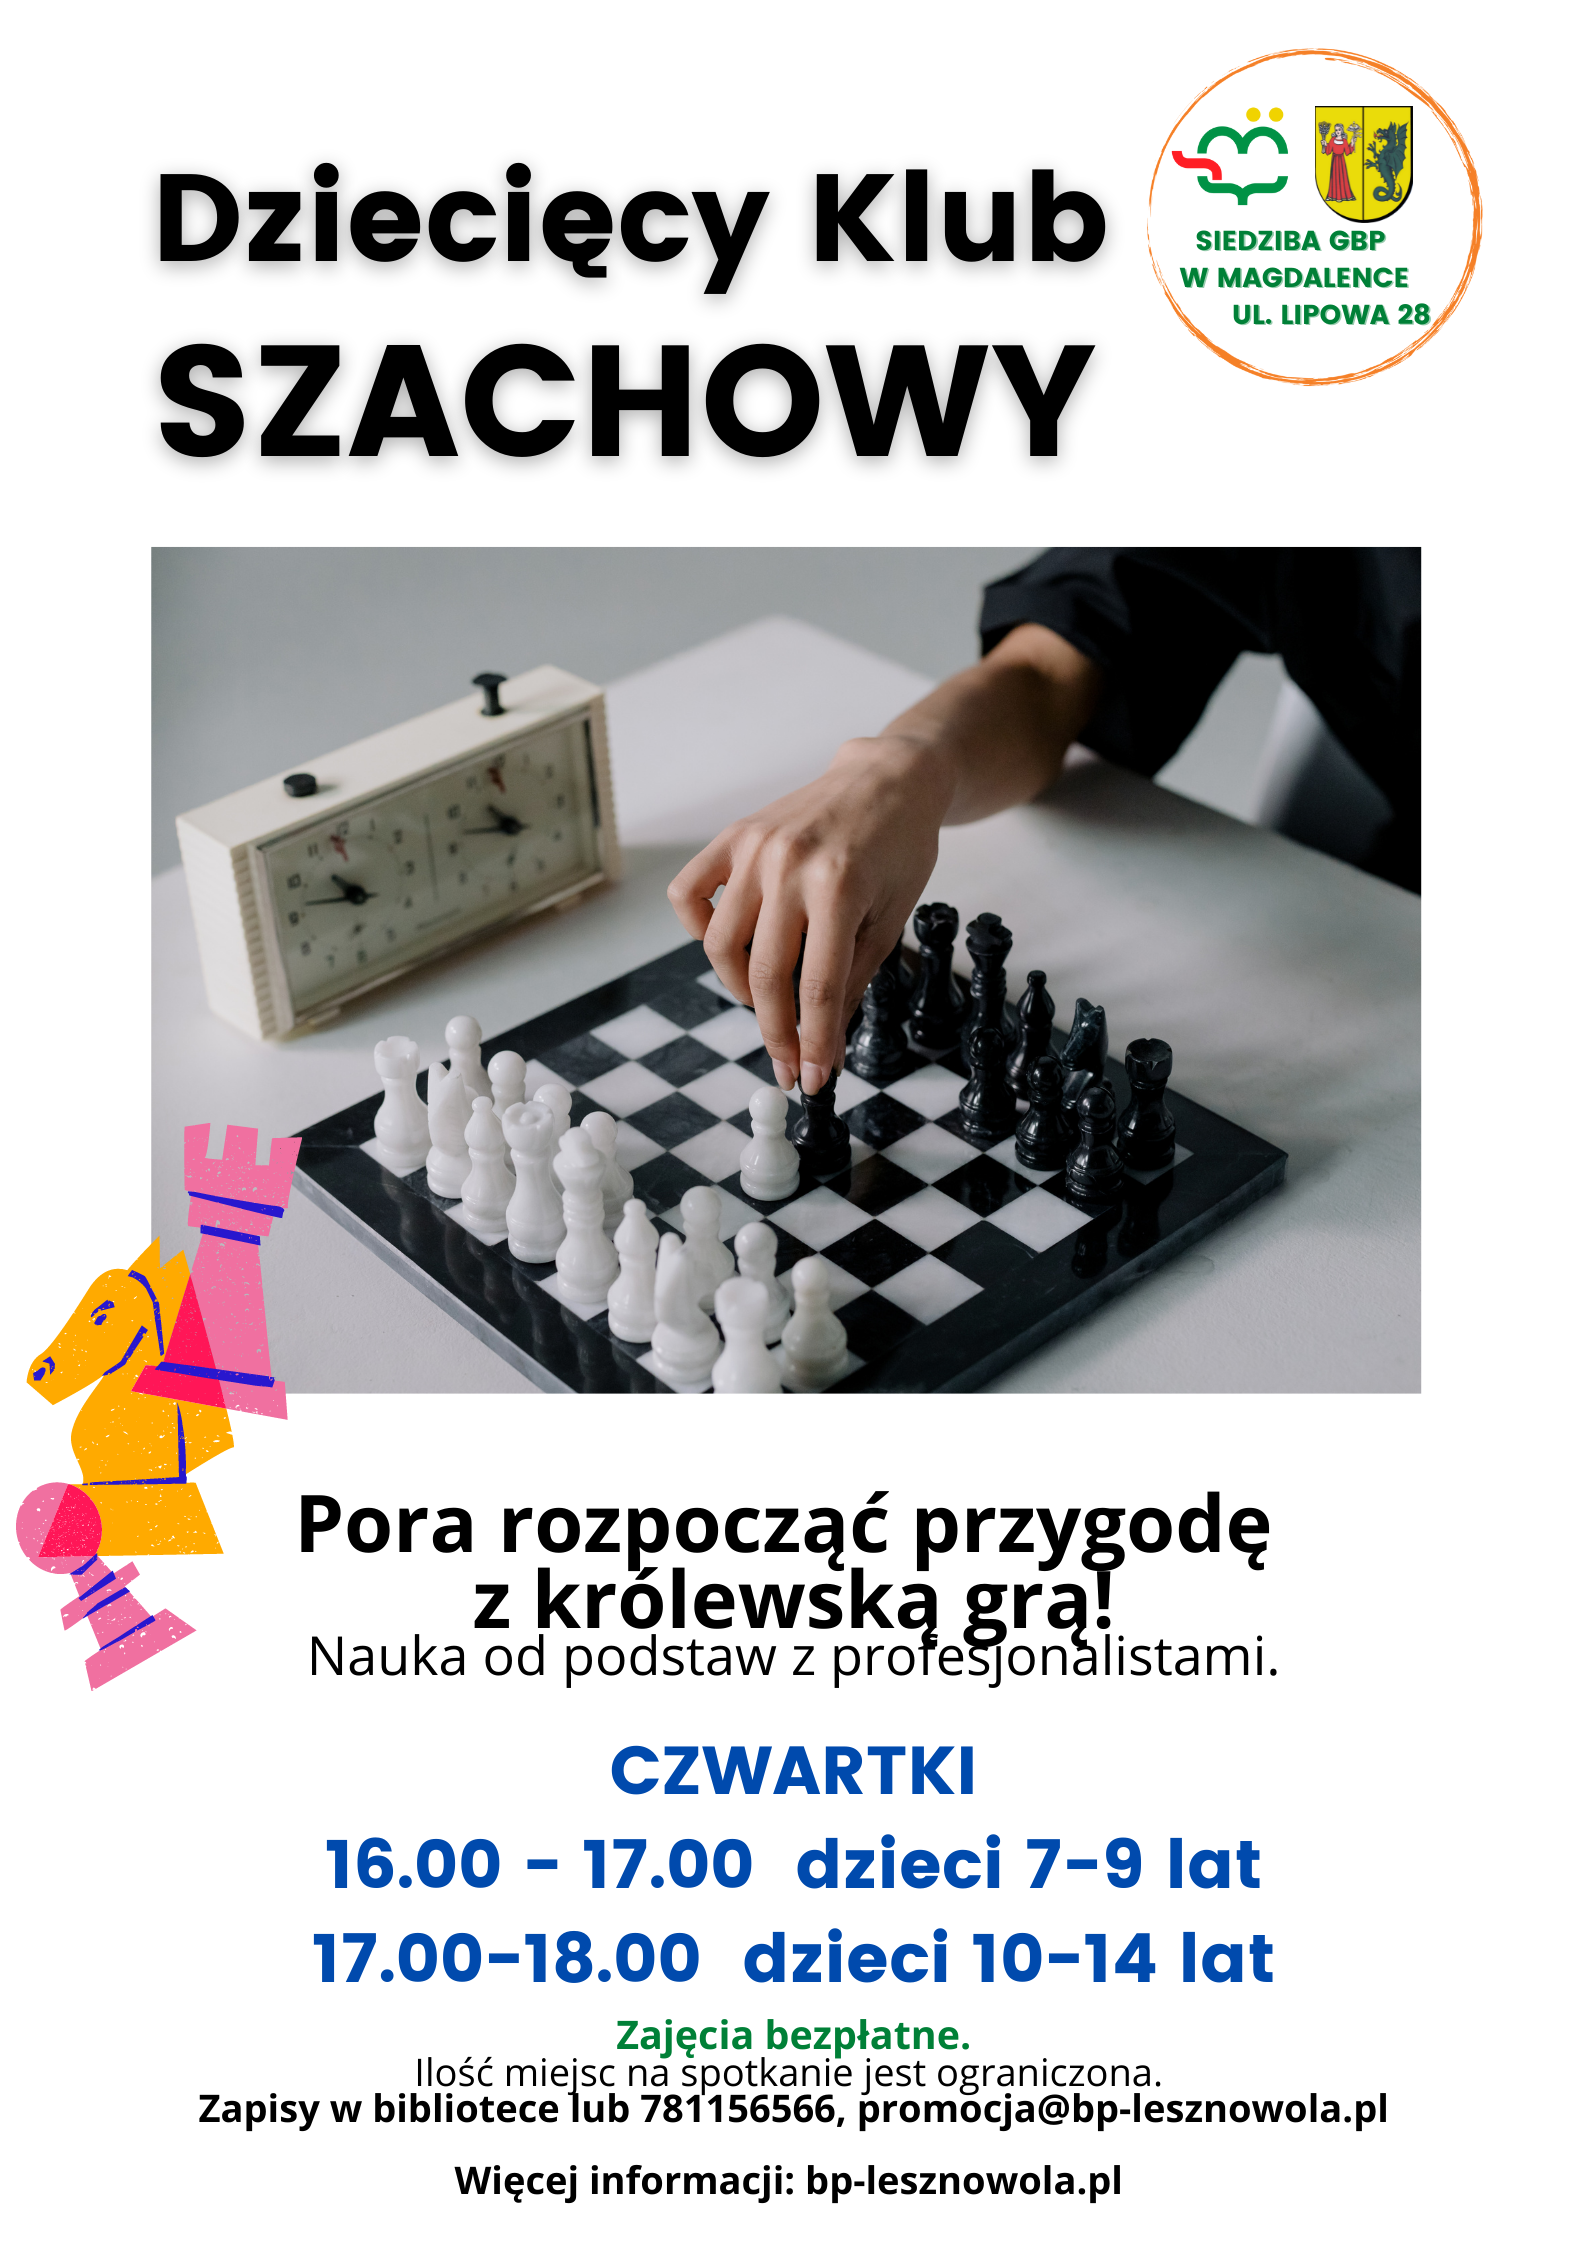 You are currently viewing Dziecięcy Klub Szachowy